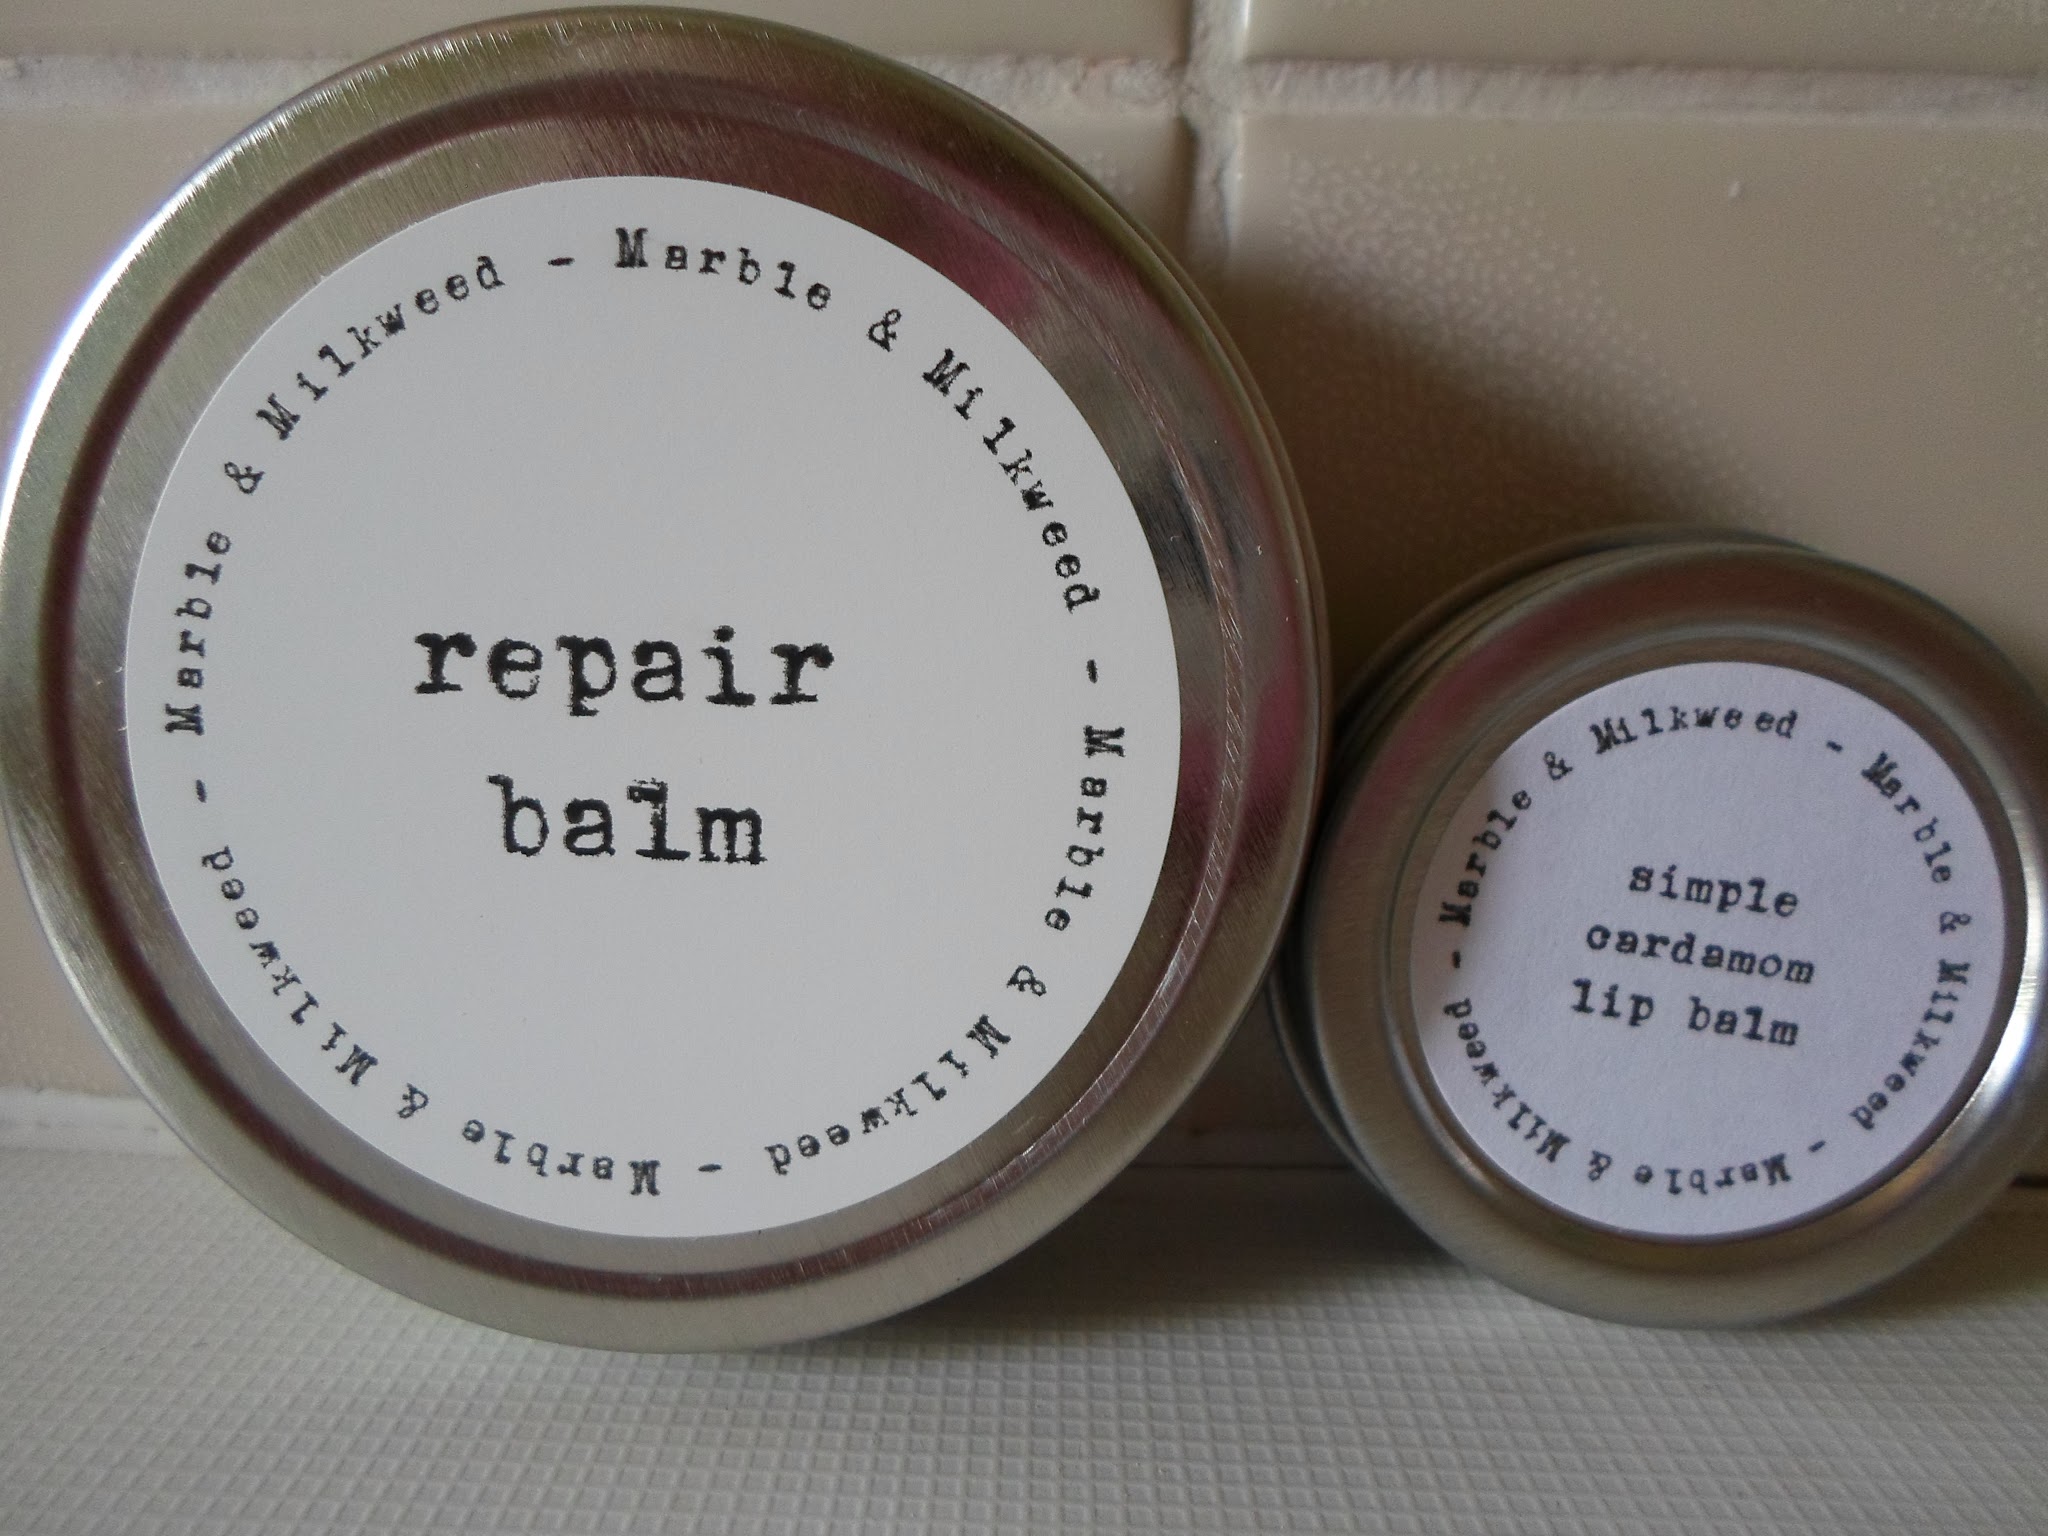 Review Marble & Milkweed Repair Balm & Lip Balm